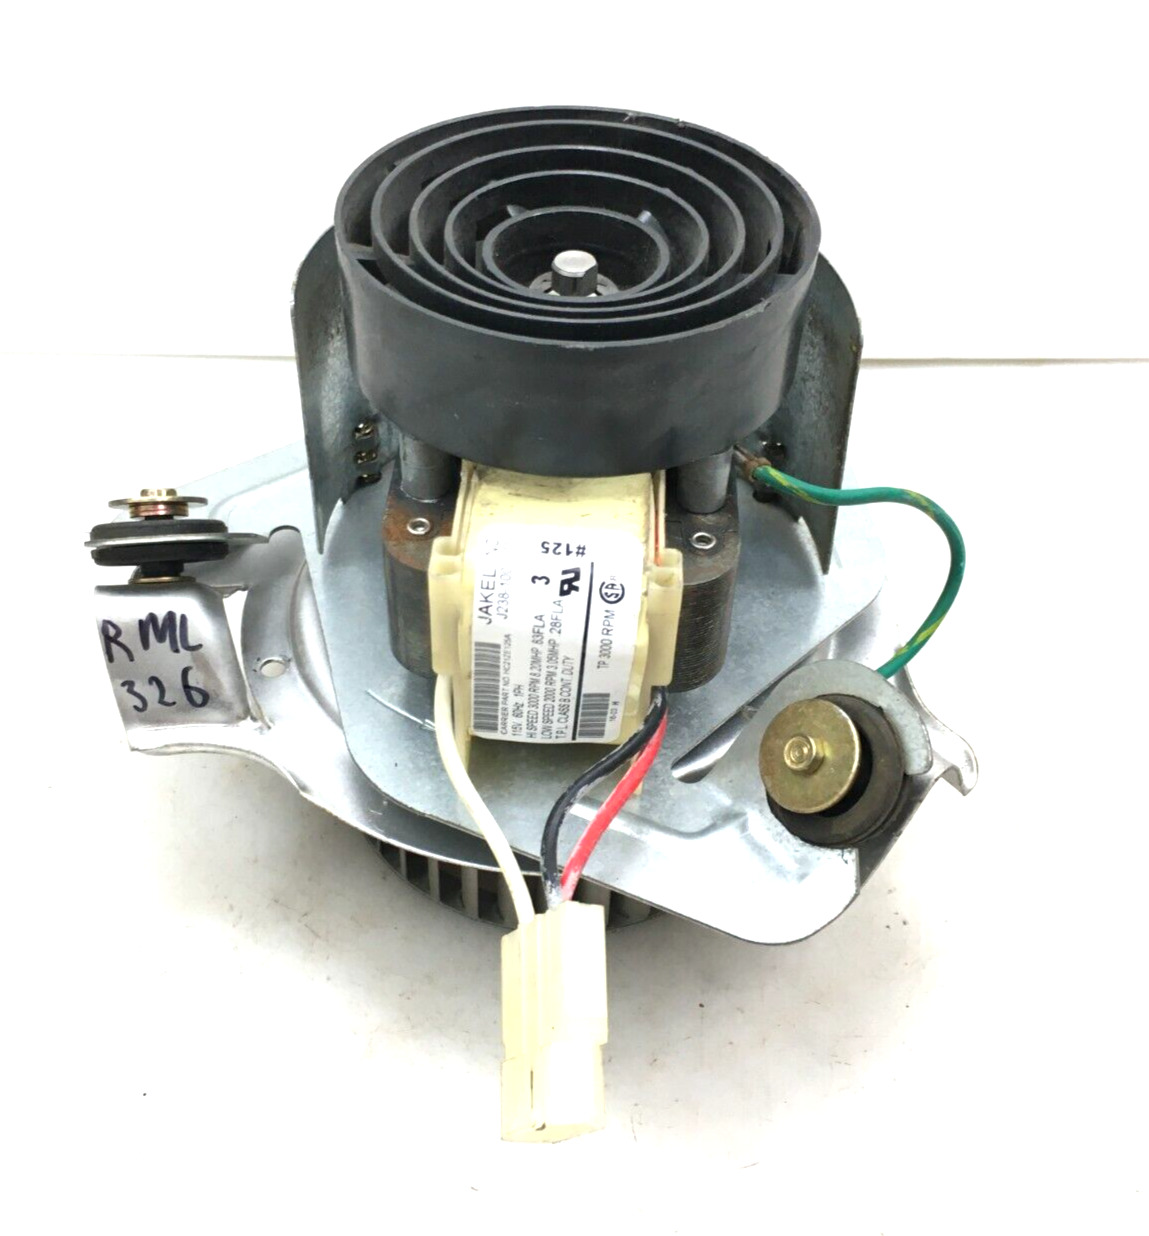 JAKEL J238-100-10110 Draft Inducer Blower Motor Carrier HC21ZE125A #RML326